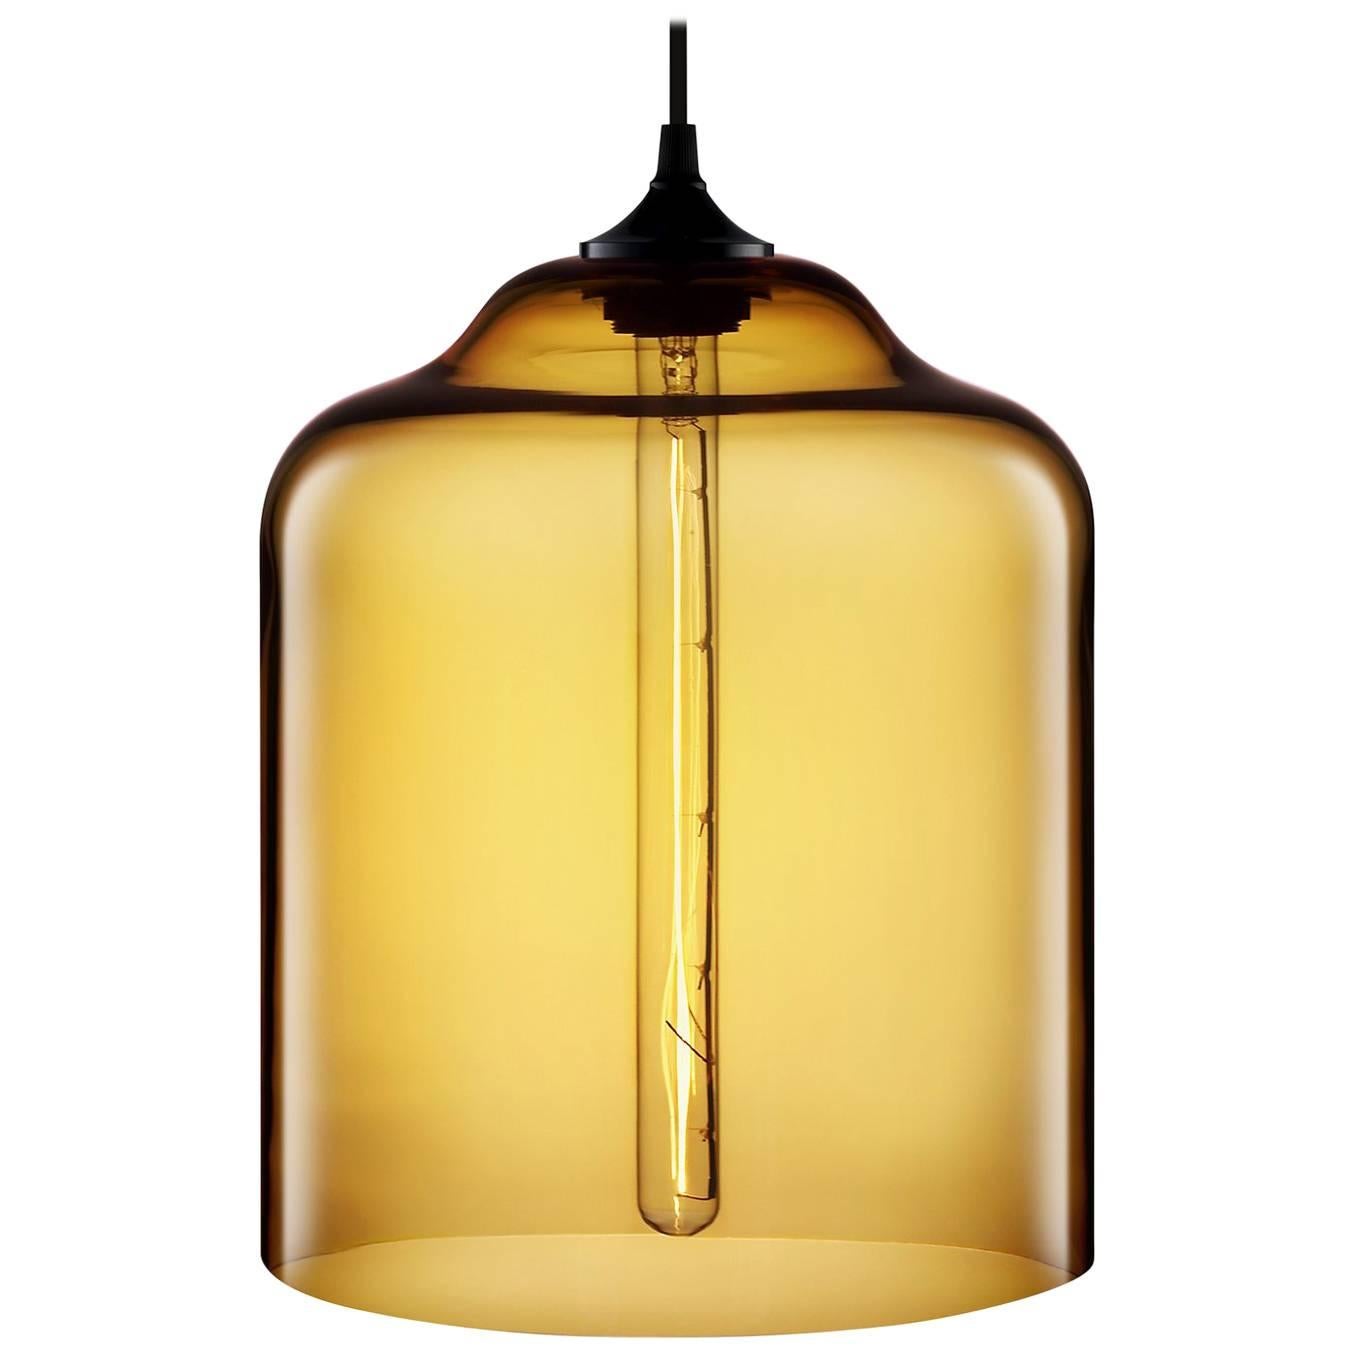 Bell Jar Amber Handblown Modern Glass Pendant Light, Made in the USA